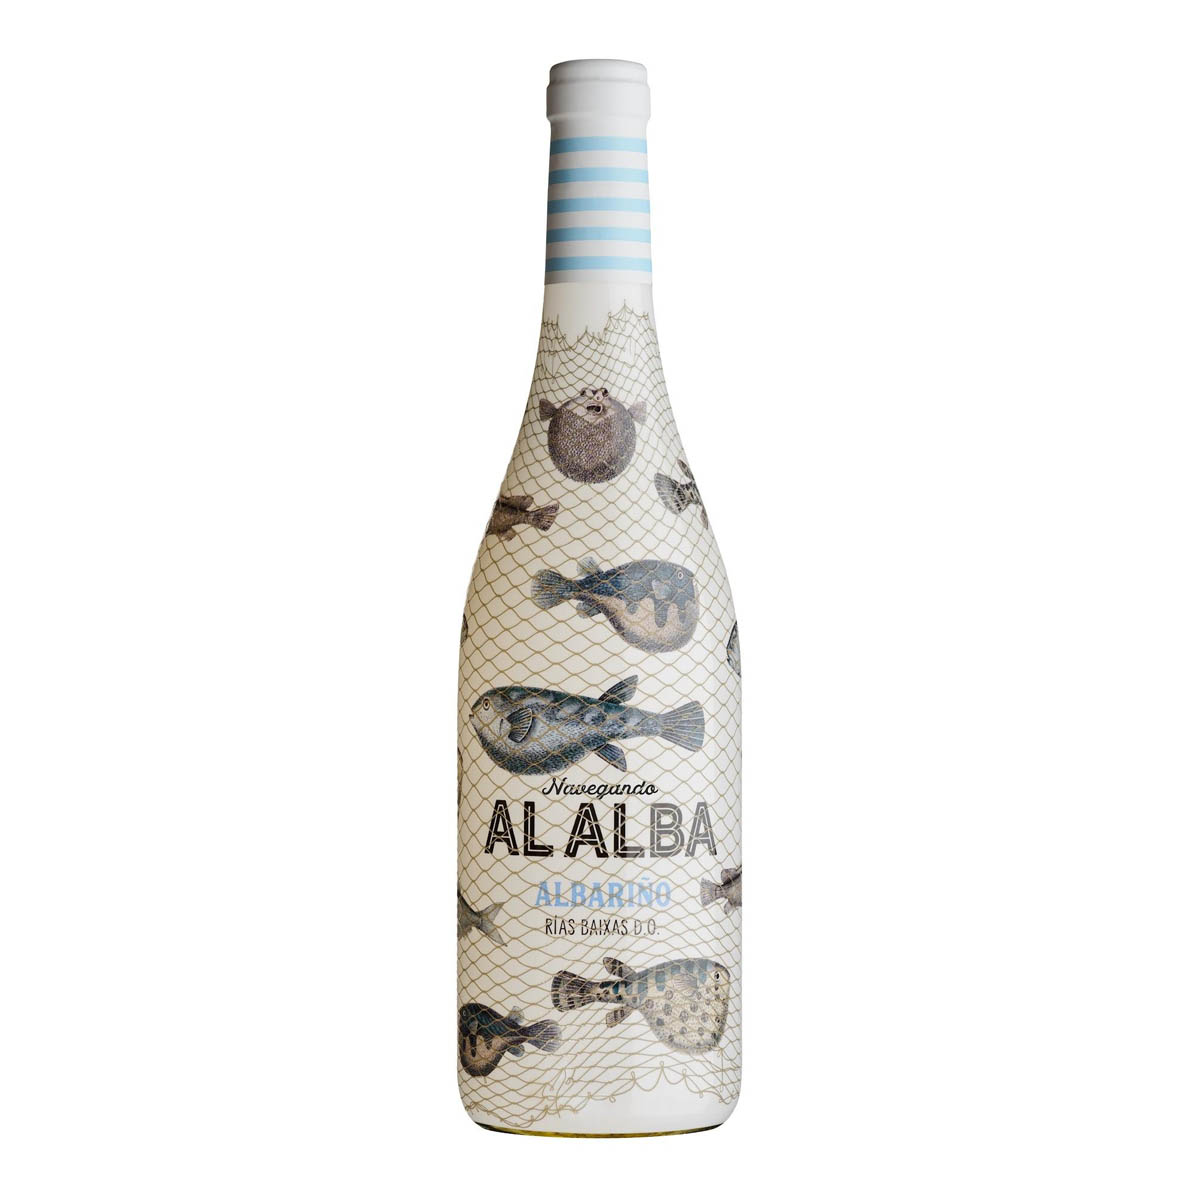 西班牙Alalba, D.O. Rias Baixas, White wine